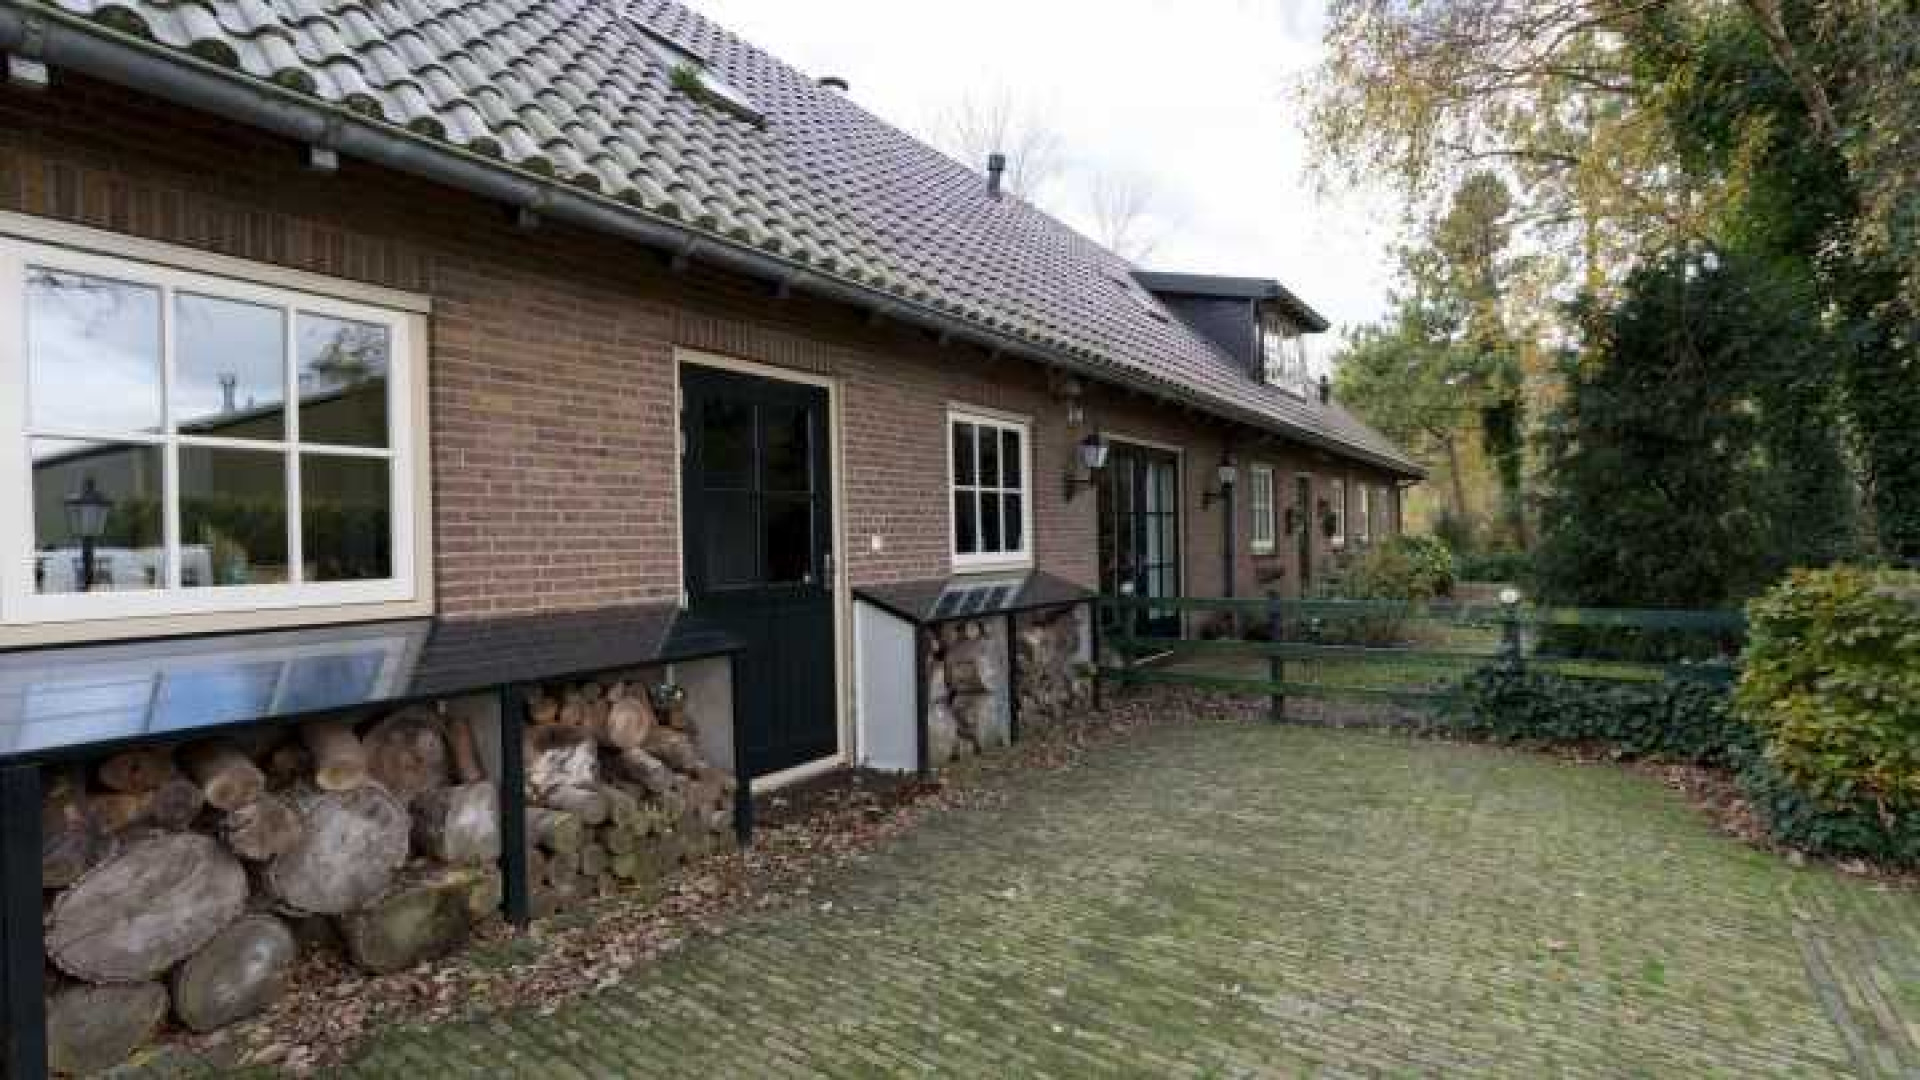 Henny Huisman verkoopt zijn villa zwaar onder de vraagprijs. Zie foto's 46